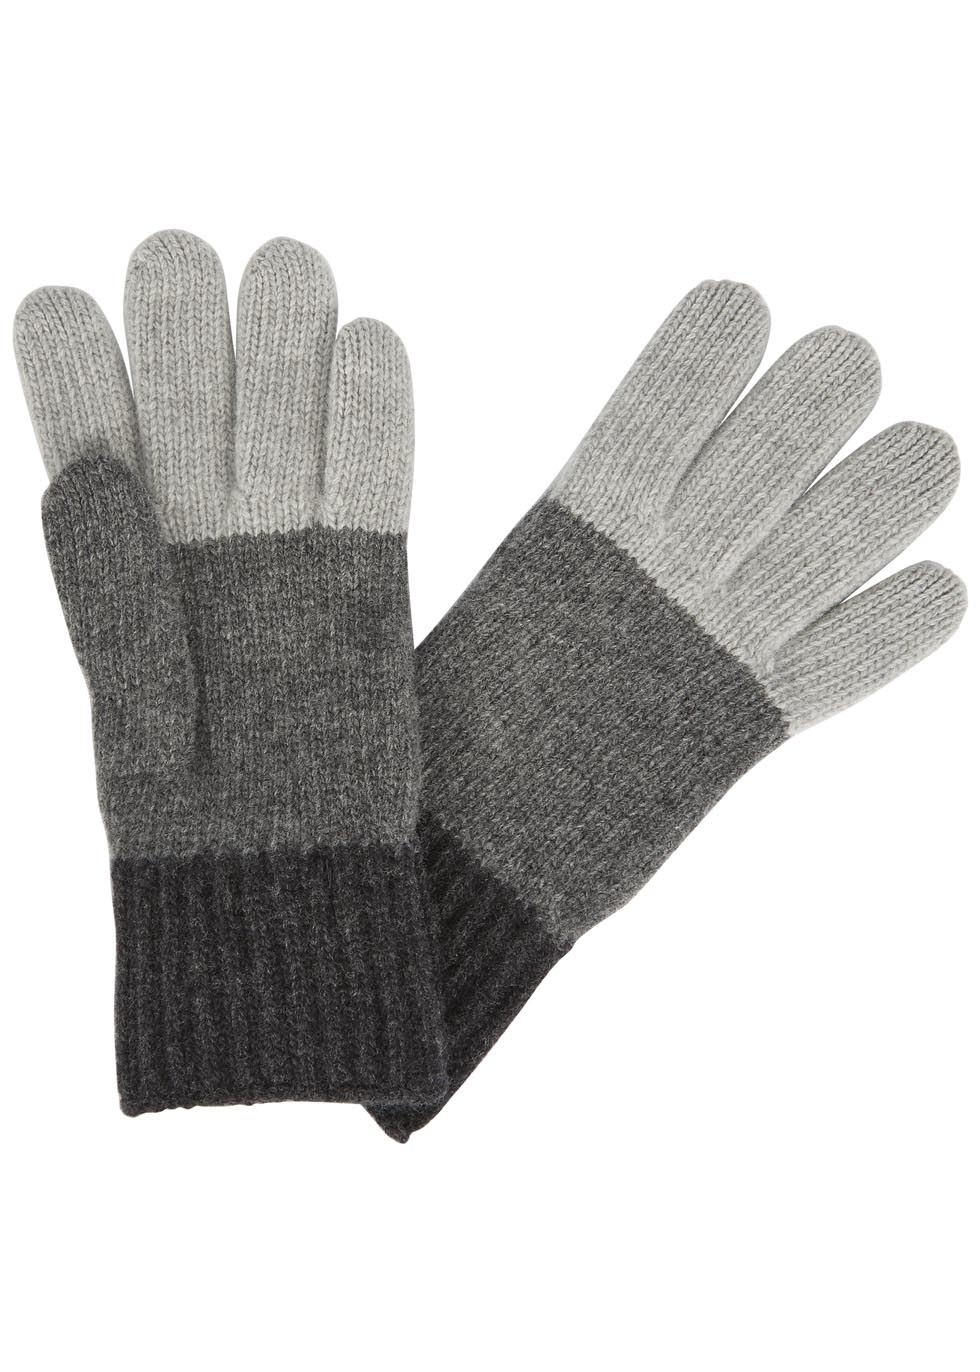 Tri-tone grey striped wool gloves